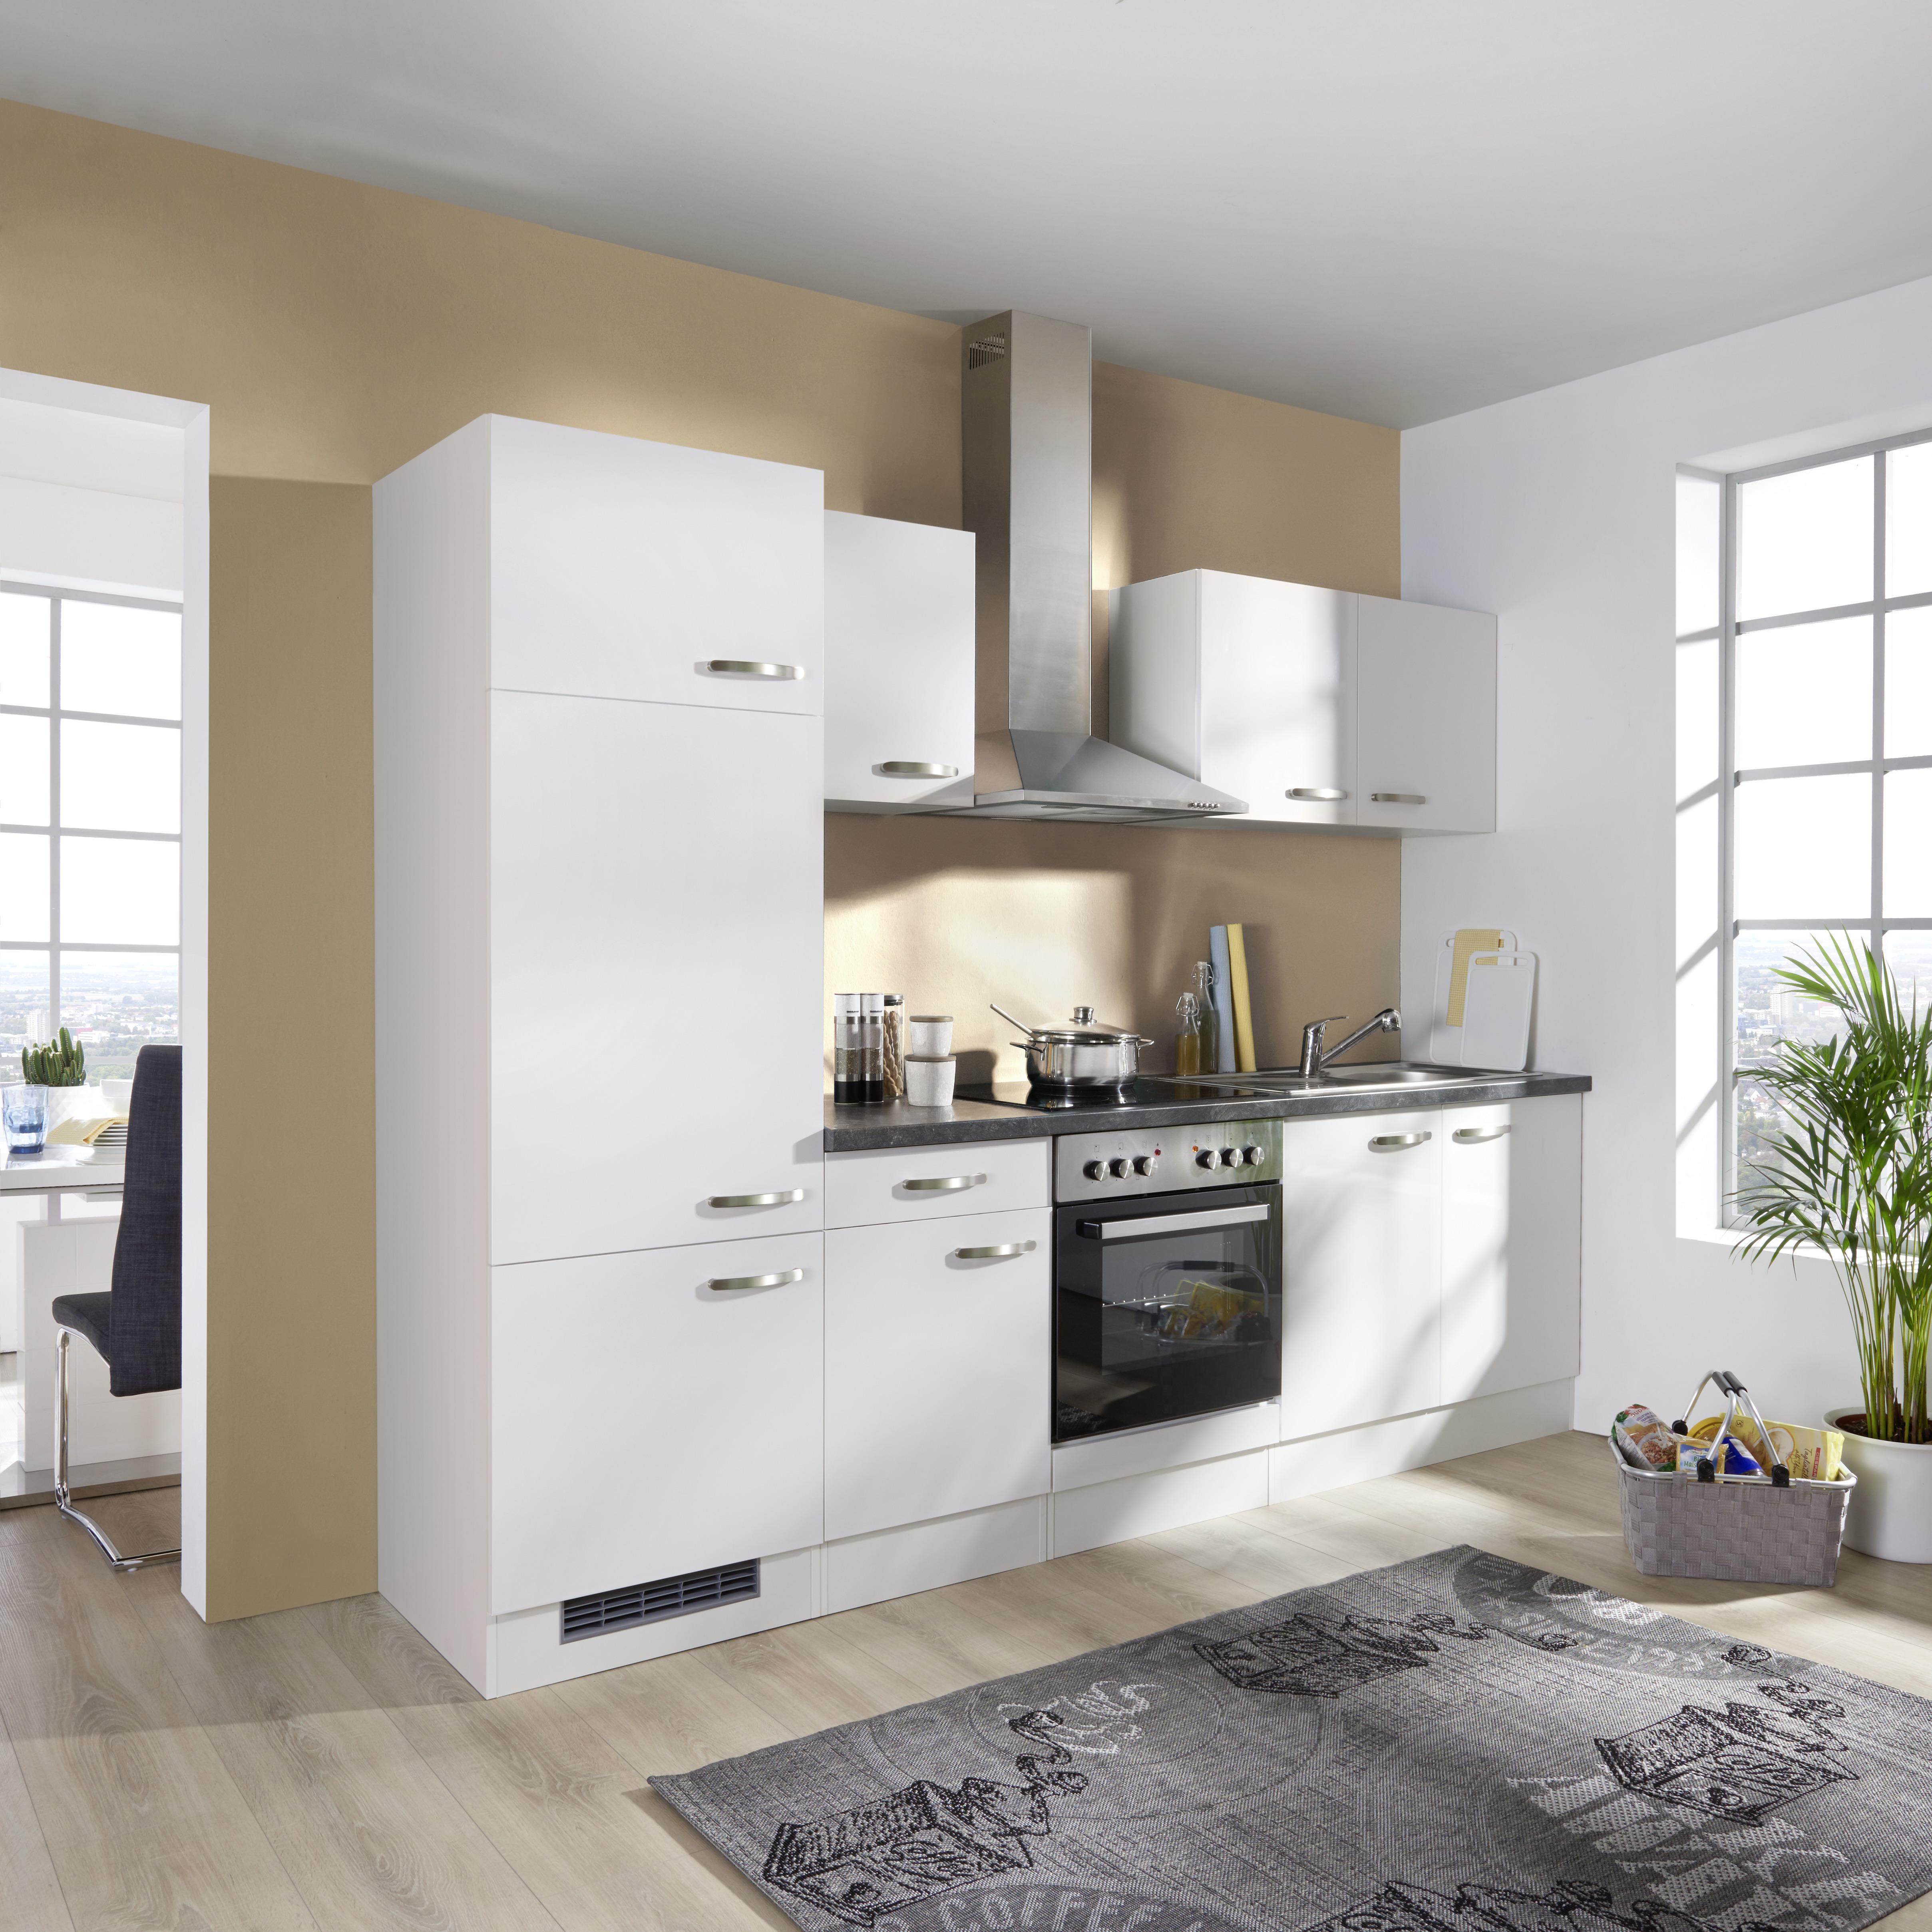 Küchenzeile Alba ohne Geräte 270 cm Weiß/Schiefer - Schieferfarben/Weiß, MODERN, Holzwerkstoff (270cm)